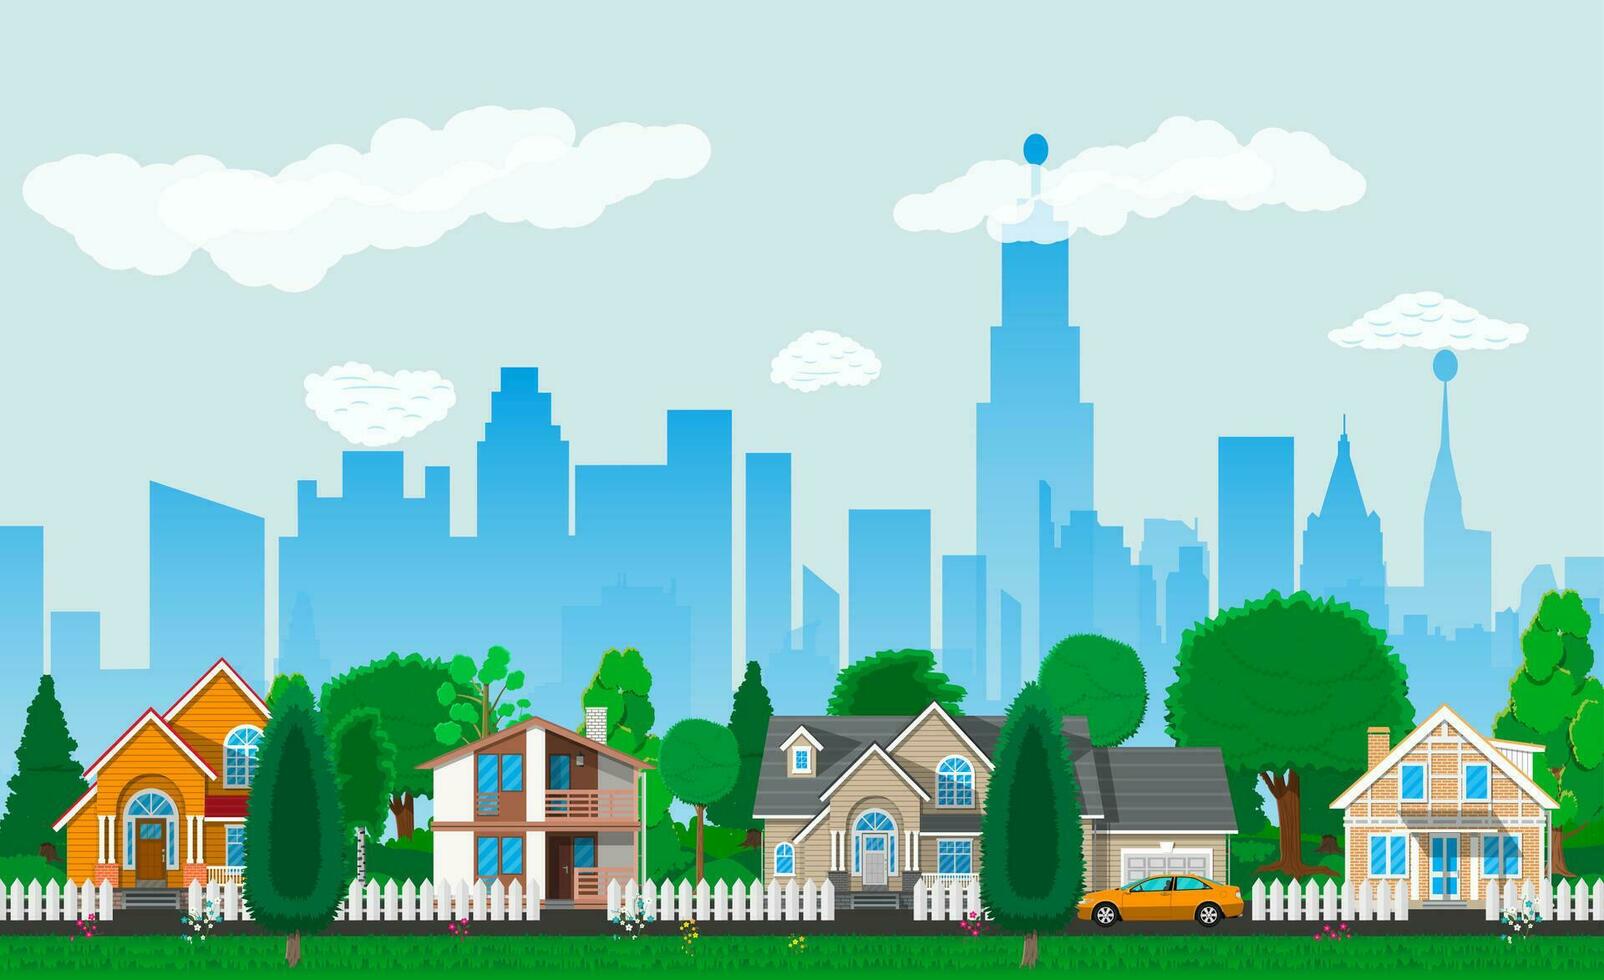 privat förorts hus med bil, träd, väg, himmel och moln. stadsbild. vektor illustration i platt stil